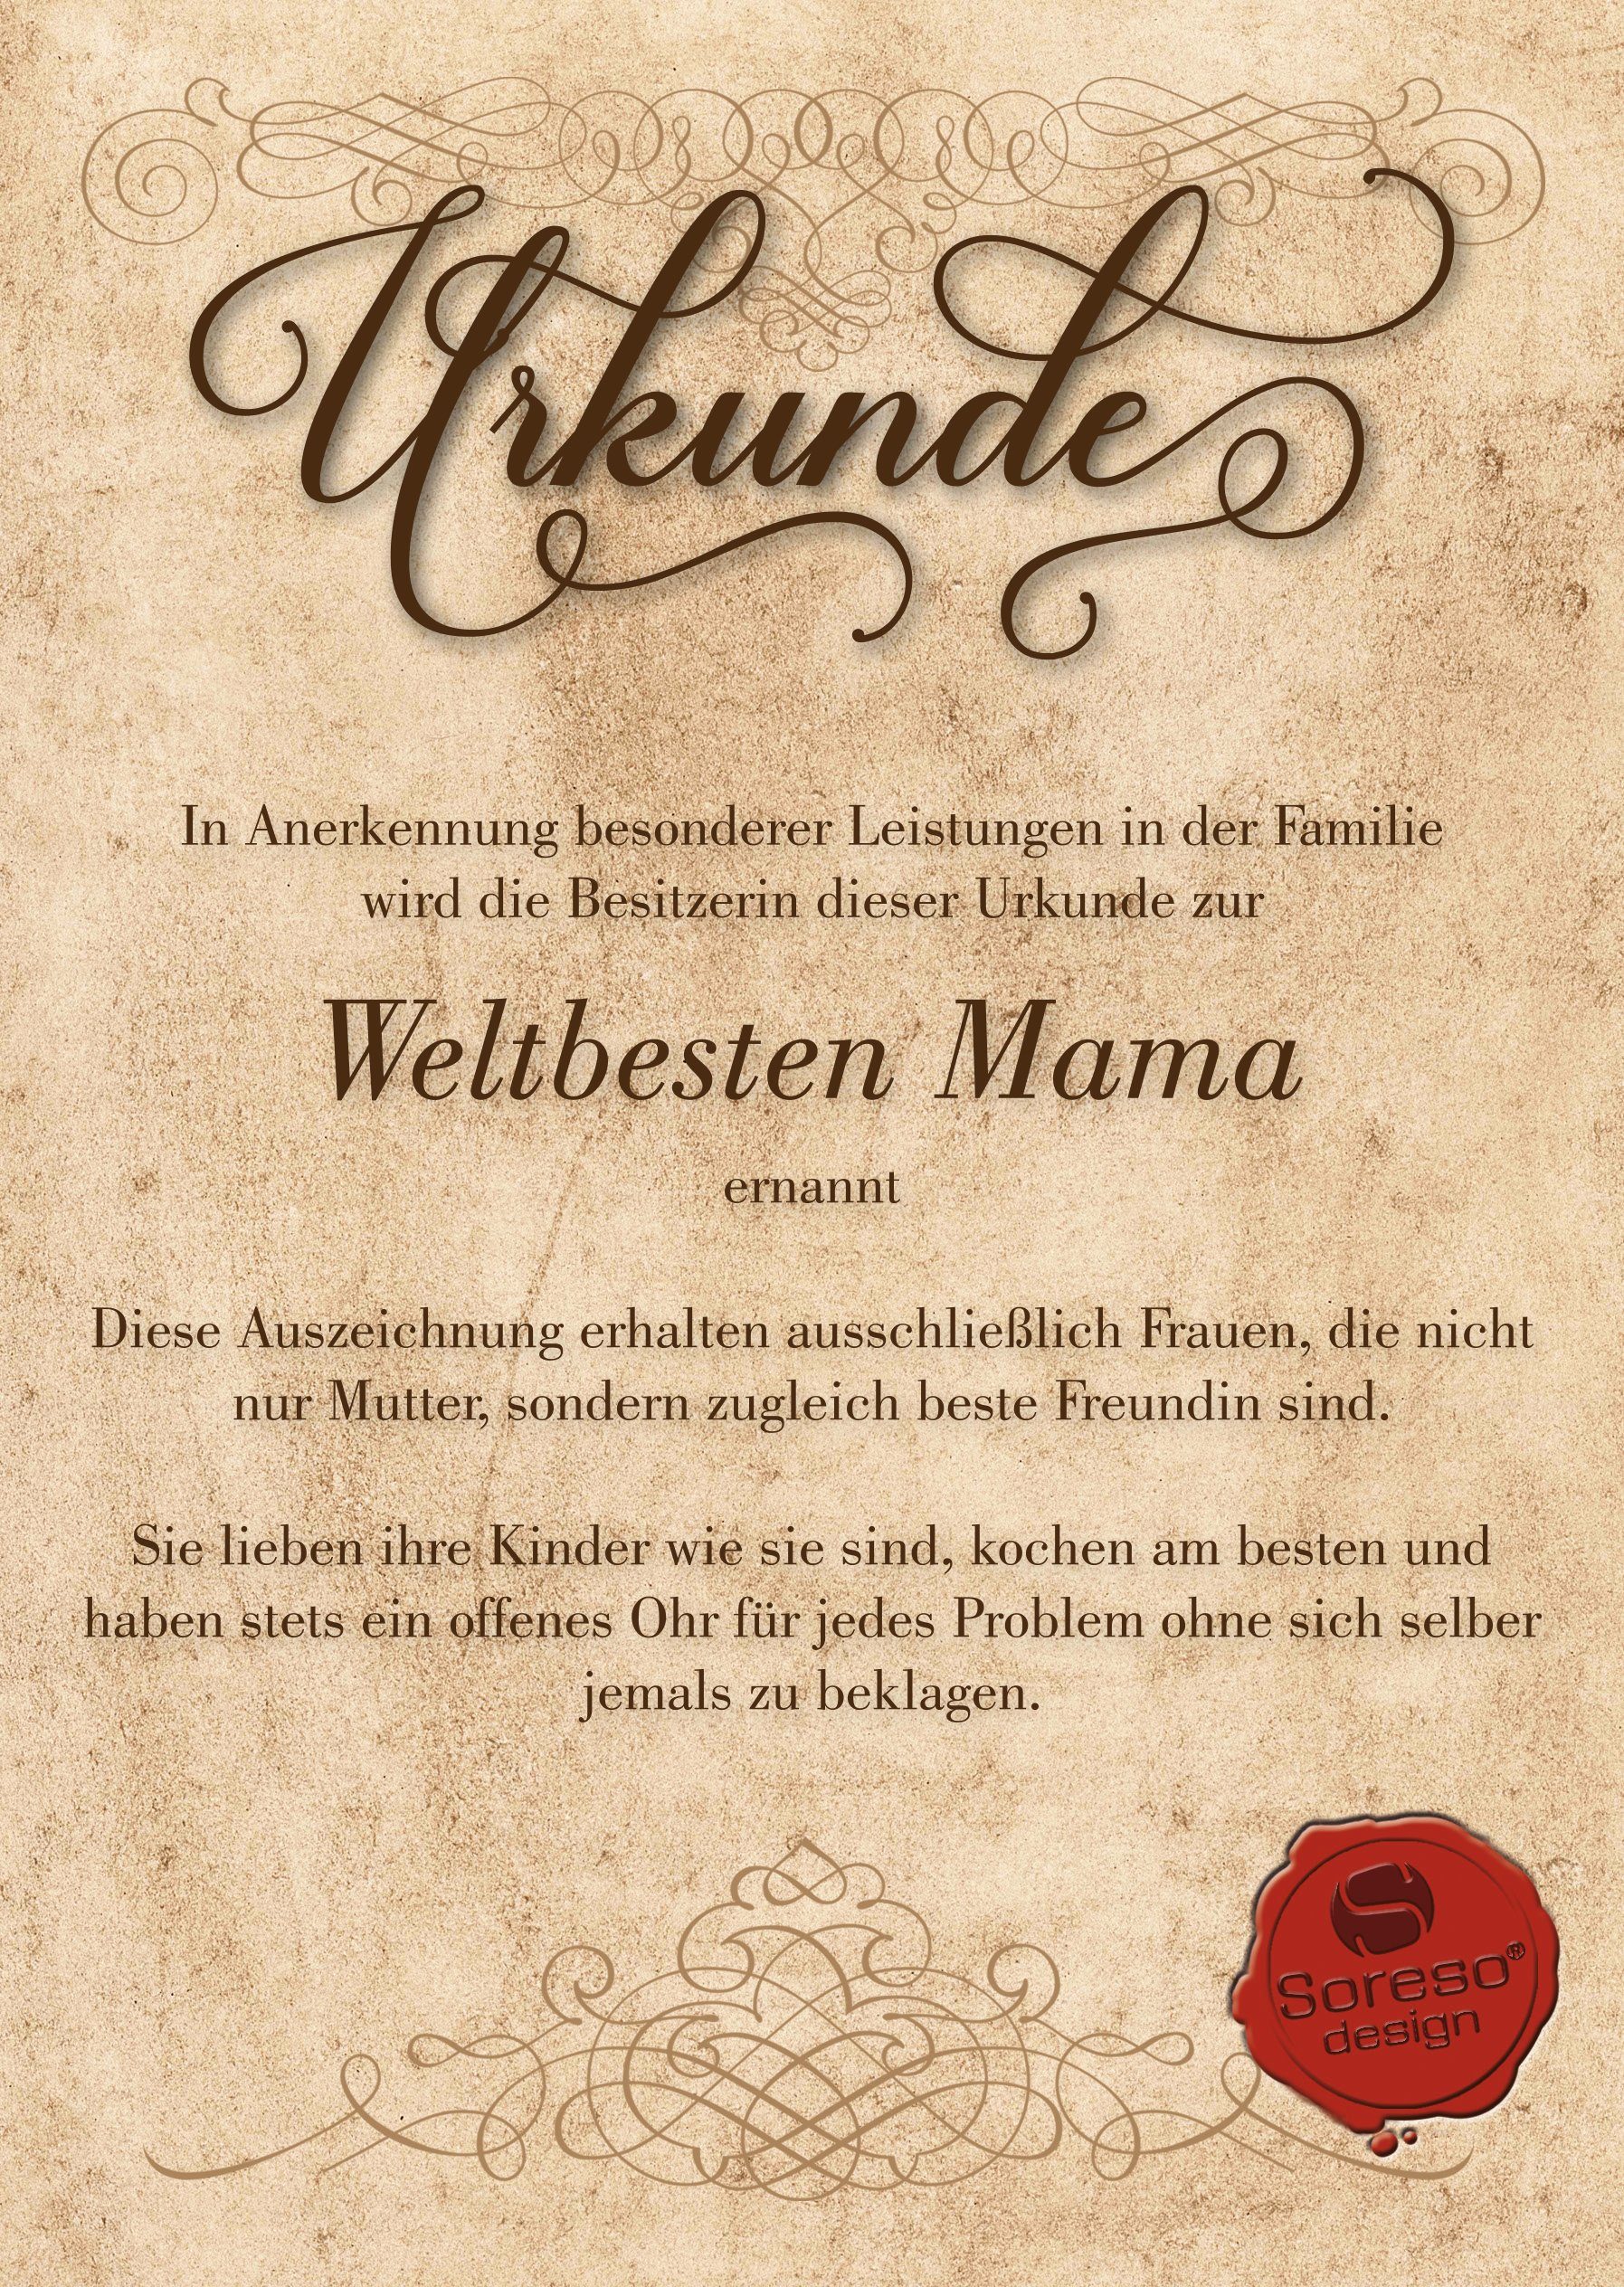 Kissen der Geschenk Geburstag Beste Mama braun & Muttertag Dekokissen Urkunde, Weihnachten Welt Soreso®